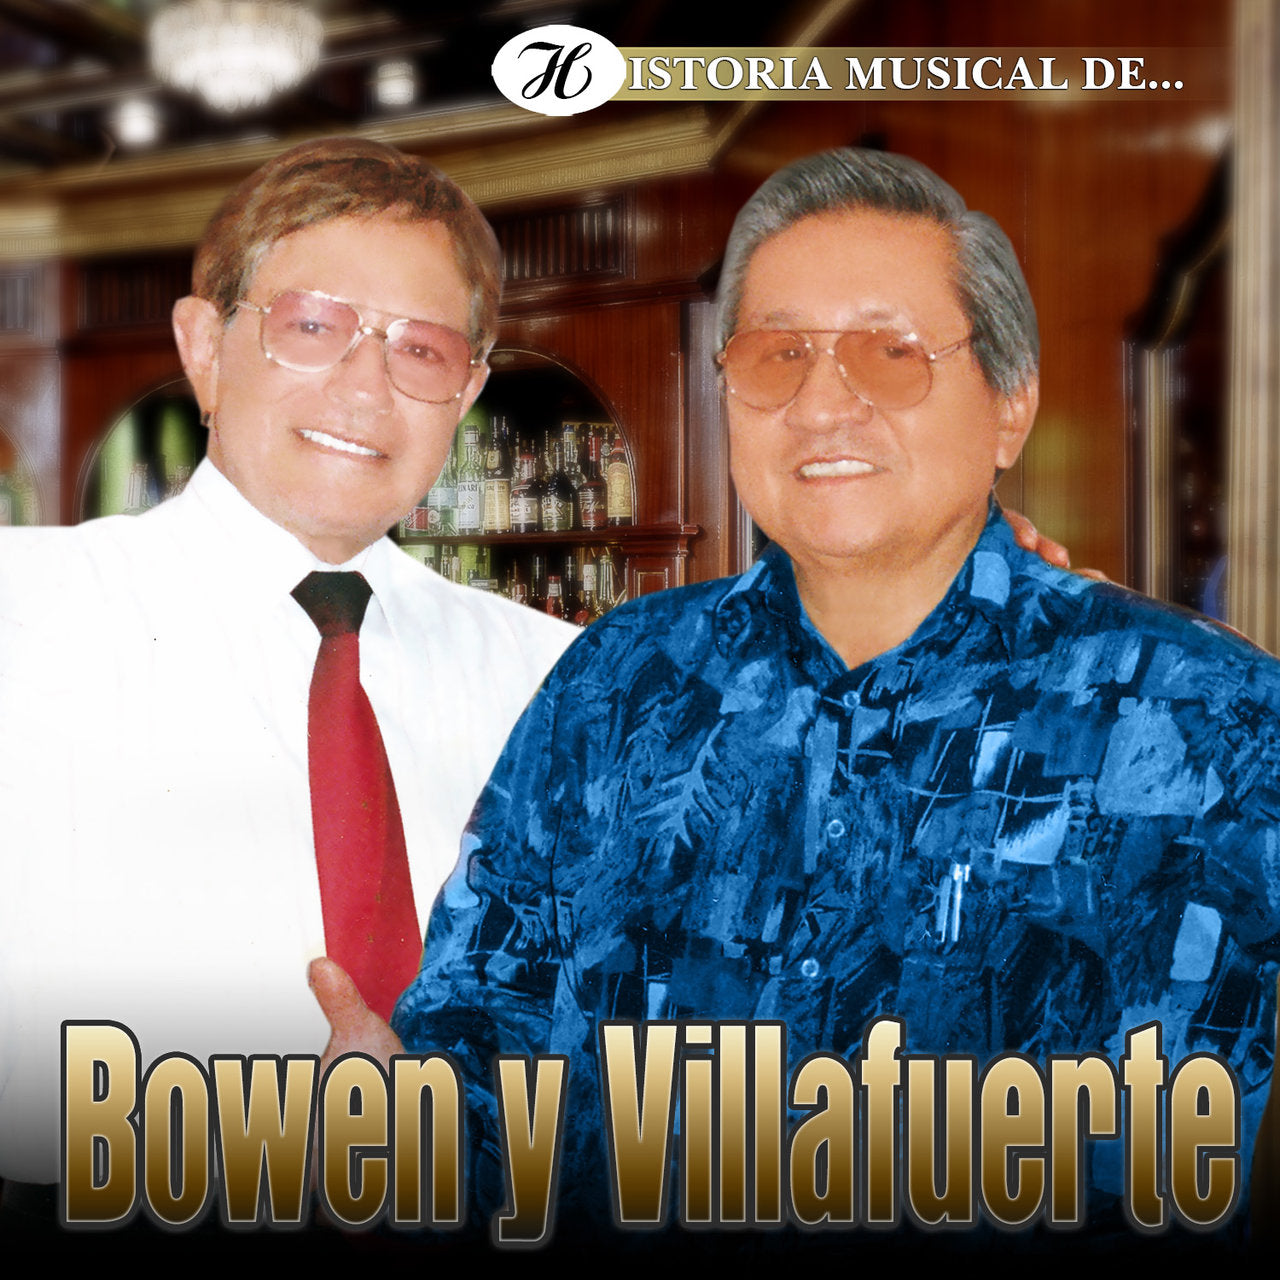 CDX2 Historia Musical De Bowen Y Villafuerte